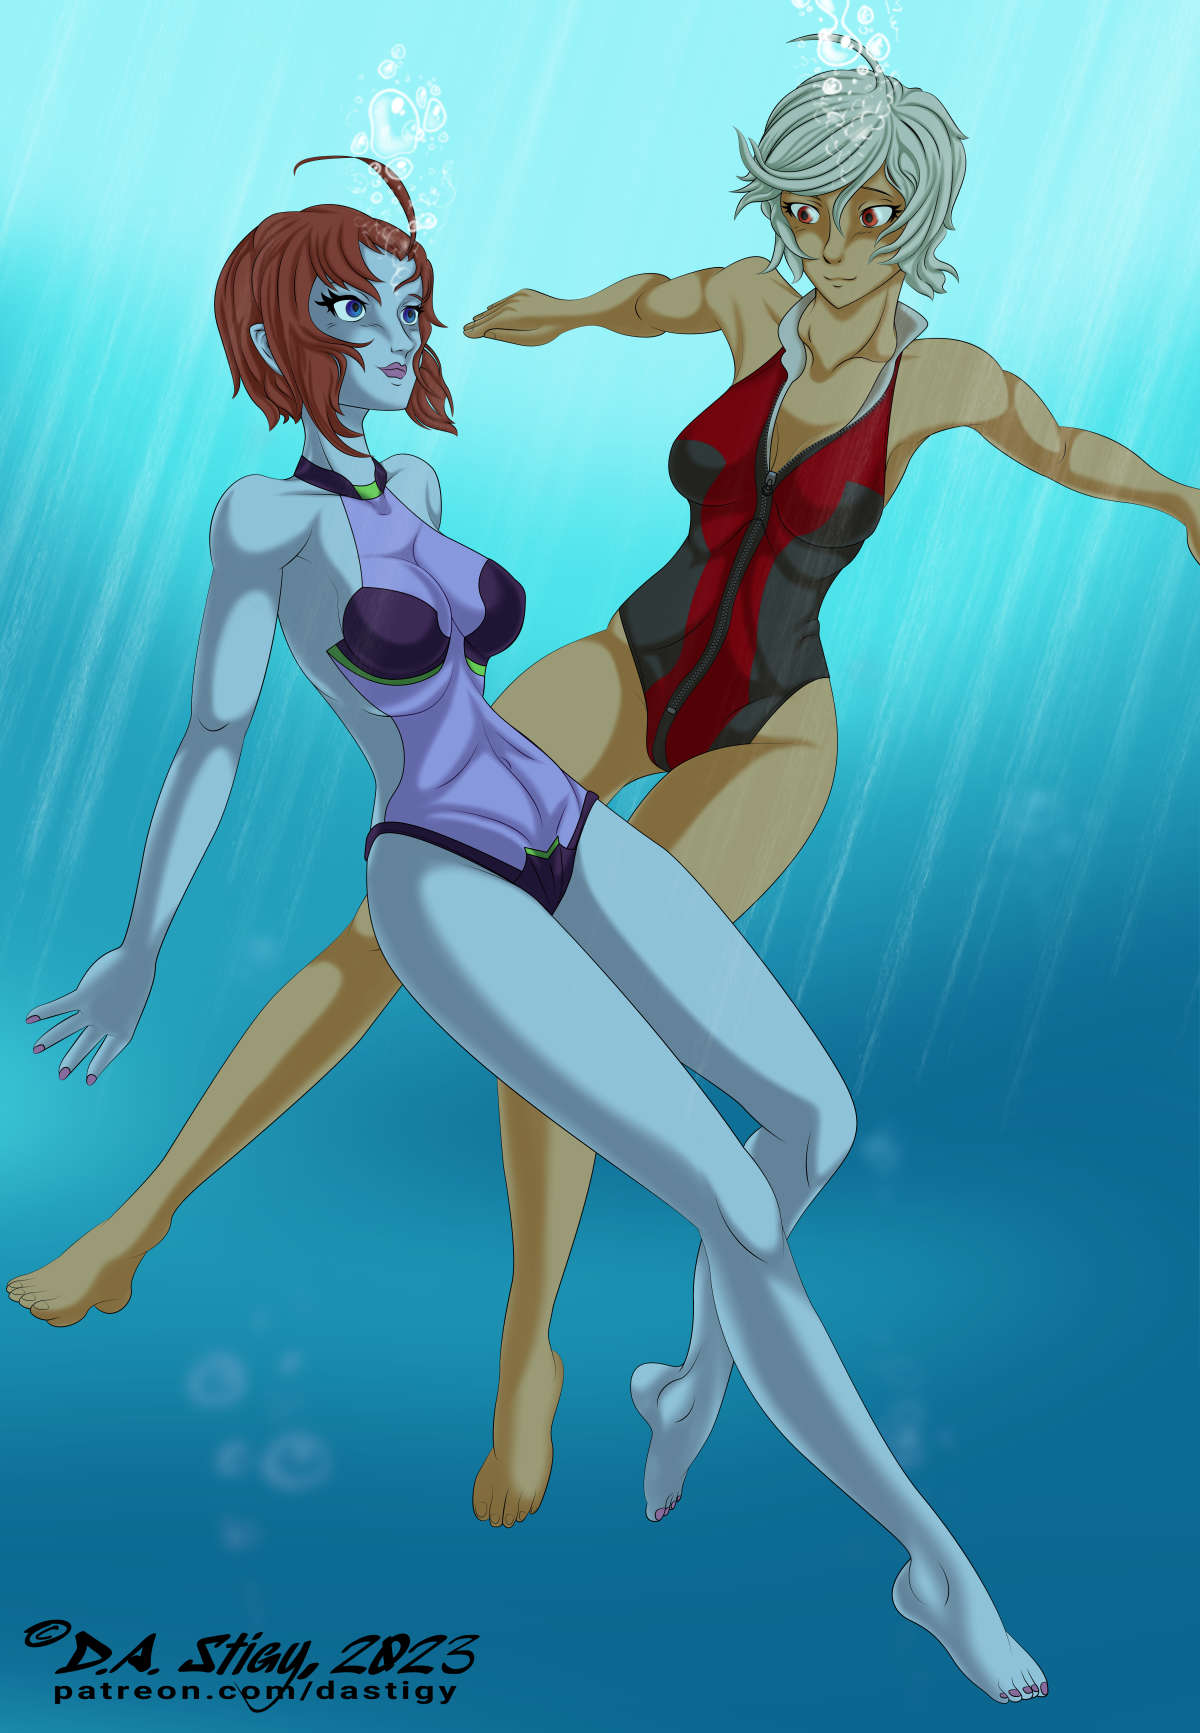 Akira Yamamoto and Melda Deitz swimming together underwater